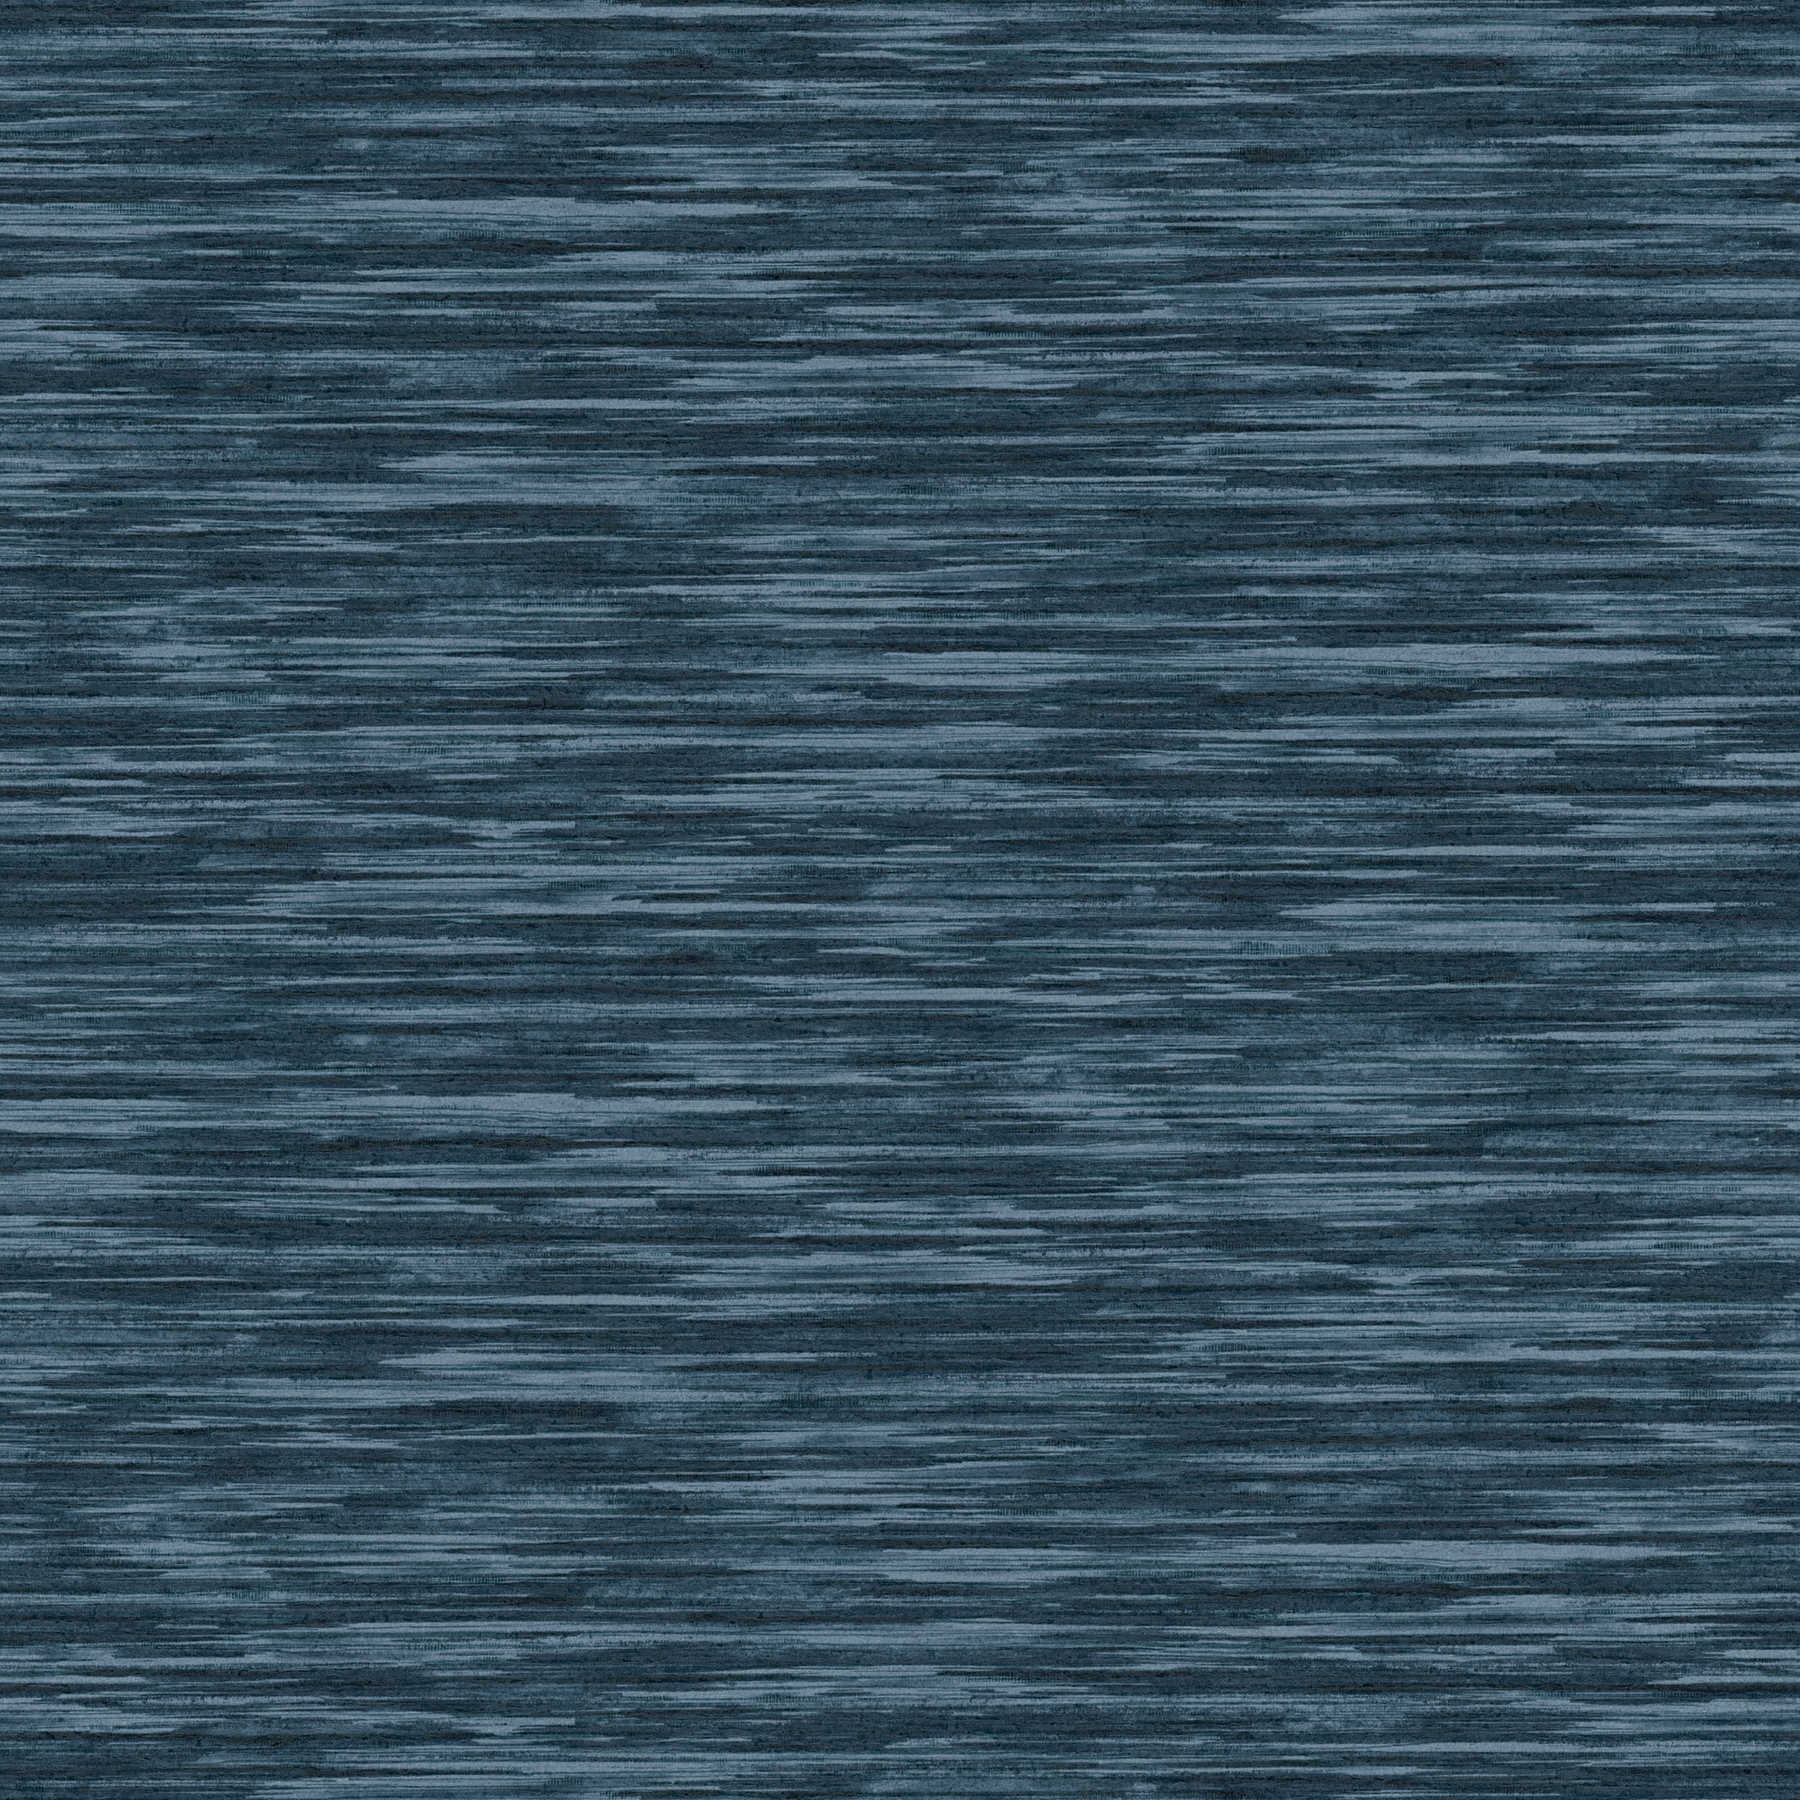 Vlekkenpatroon behang met natuurlijke kleur arceringen - blauw
